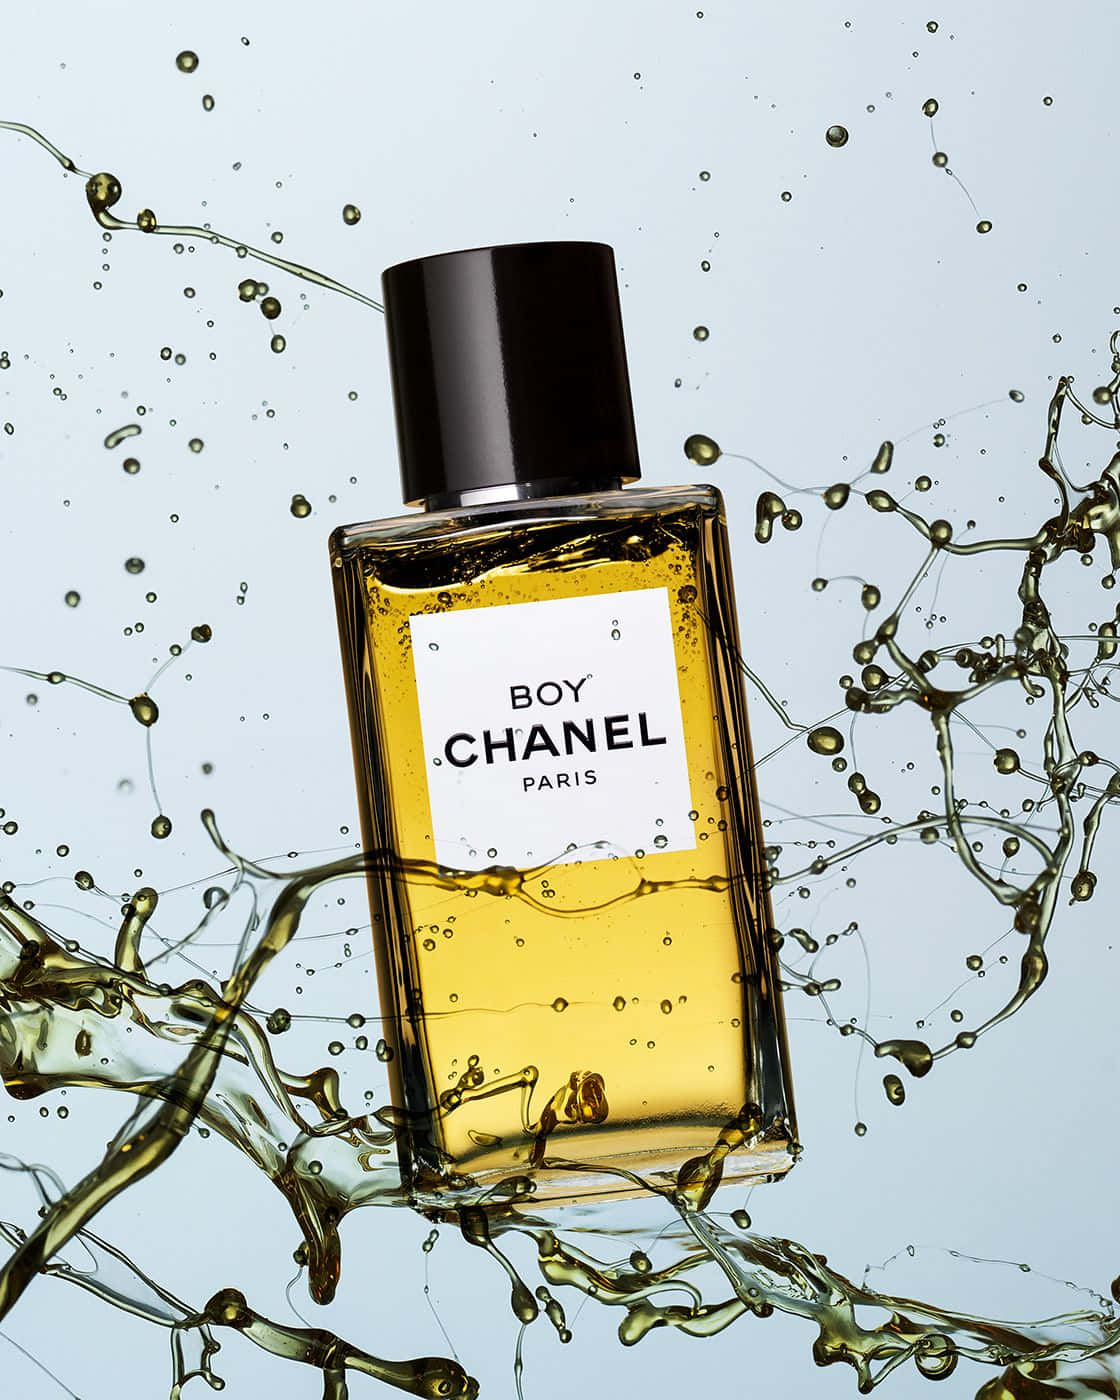 Download Chanel Eau De Toilette - A Bottle Of Perfume With Water Splashing